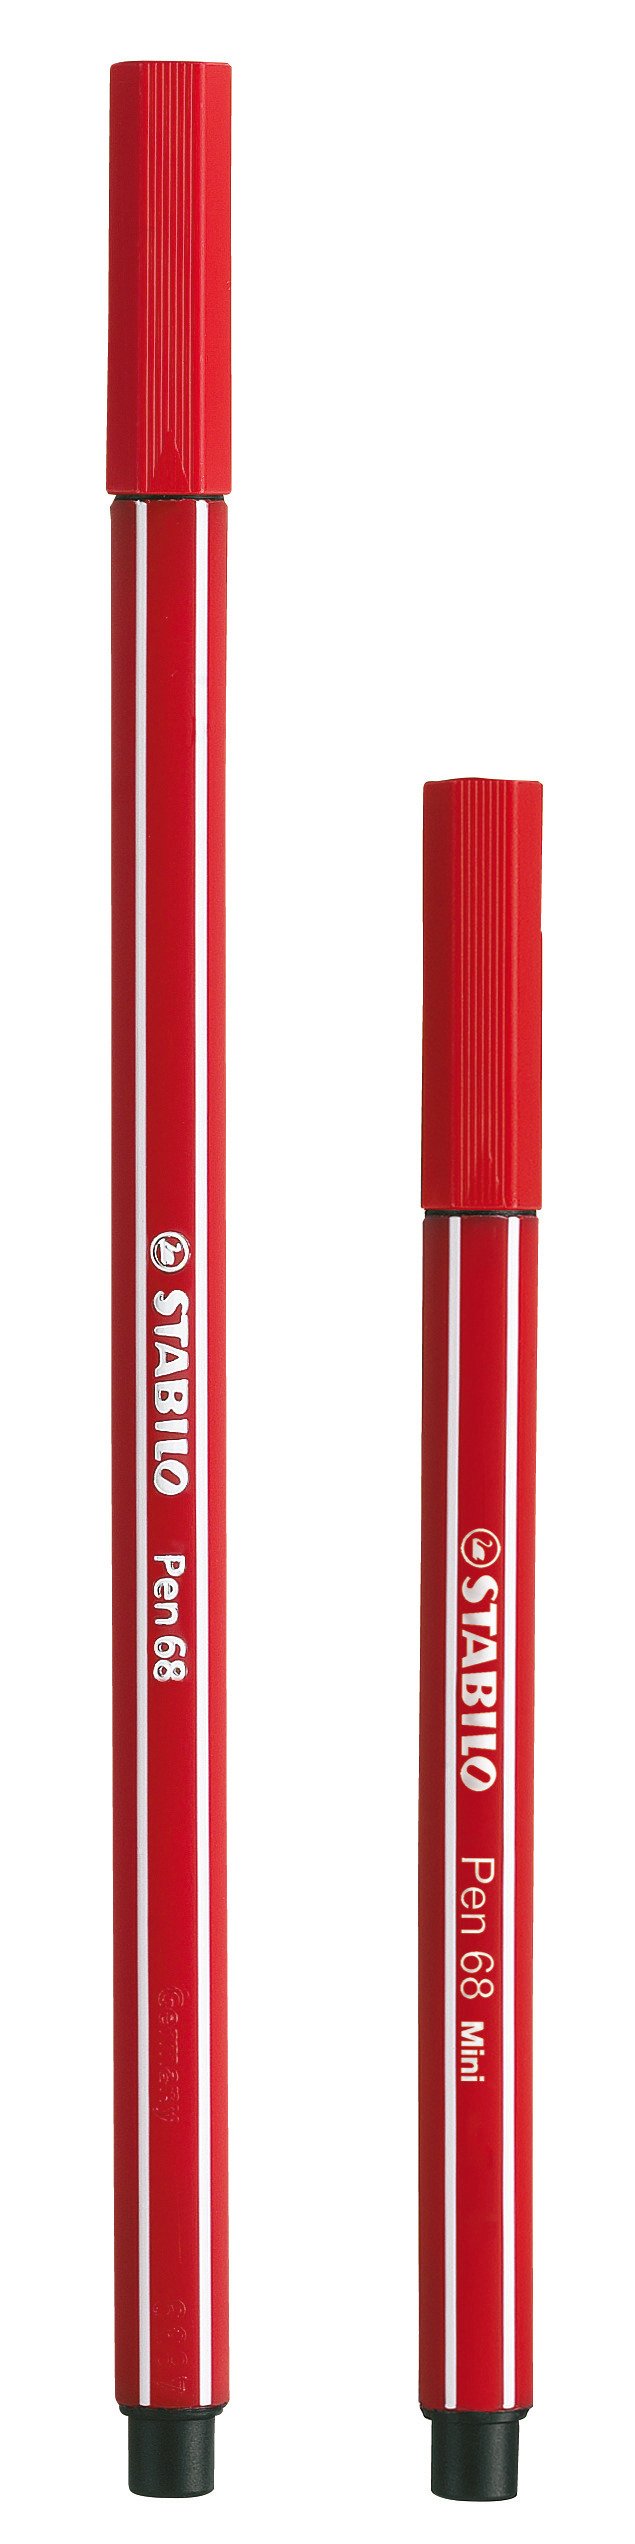 Fasermaler STABILO Pen 68 Mini